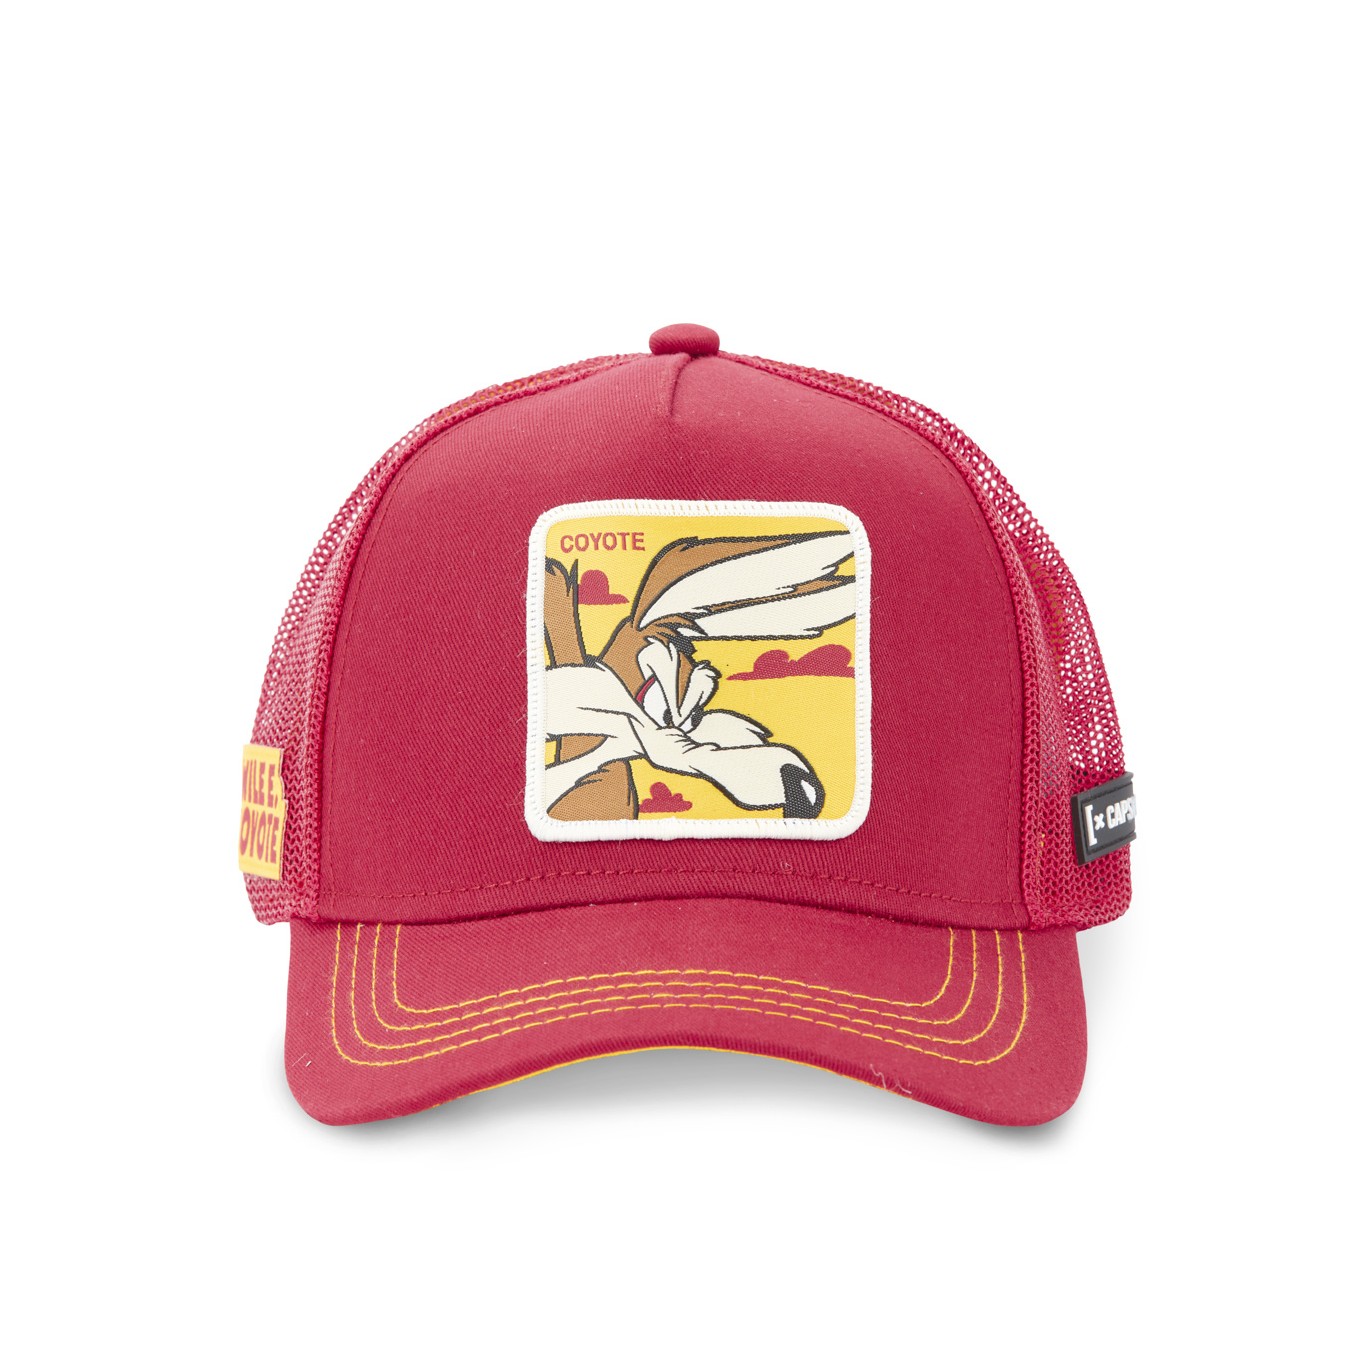 Looney Tunes Coyote adult cap Capslab - 2